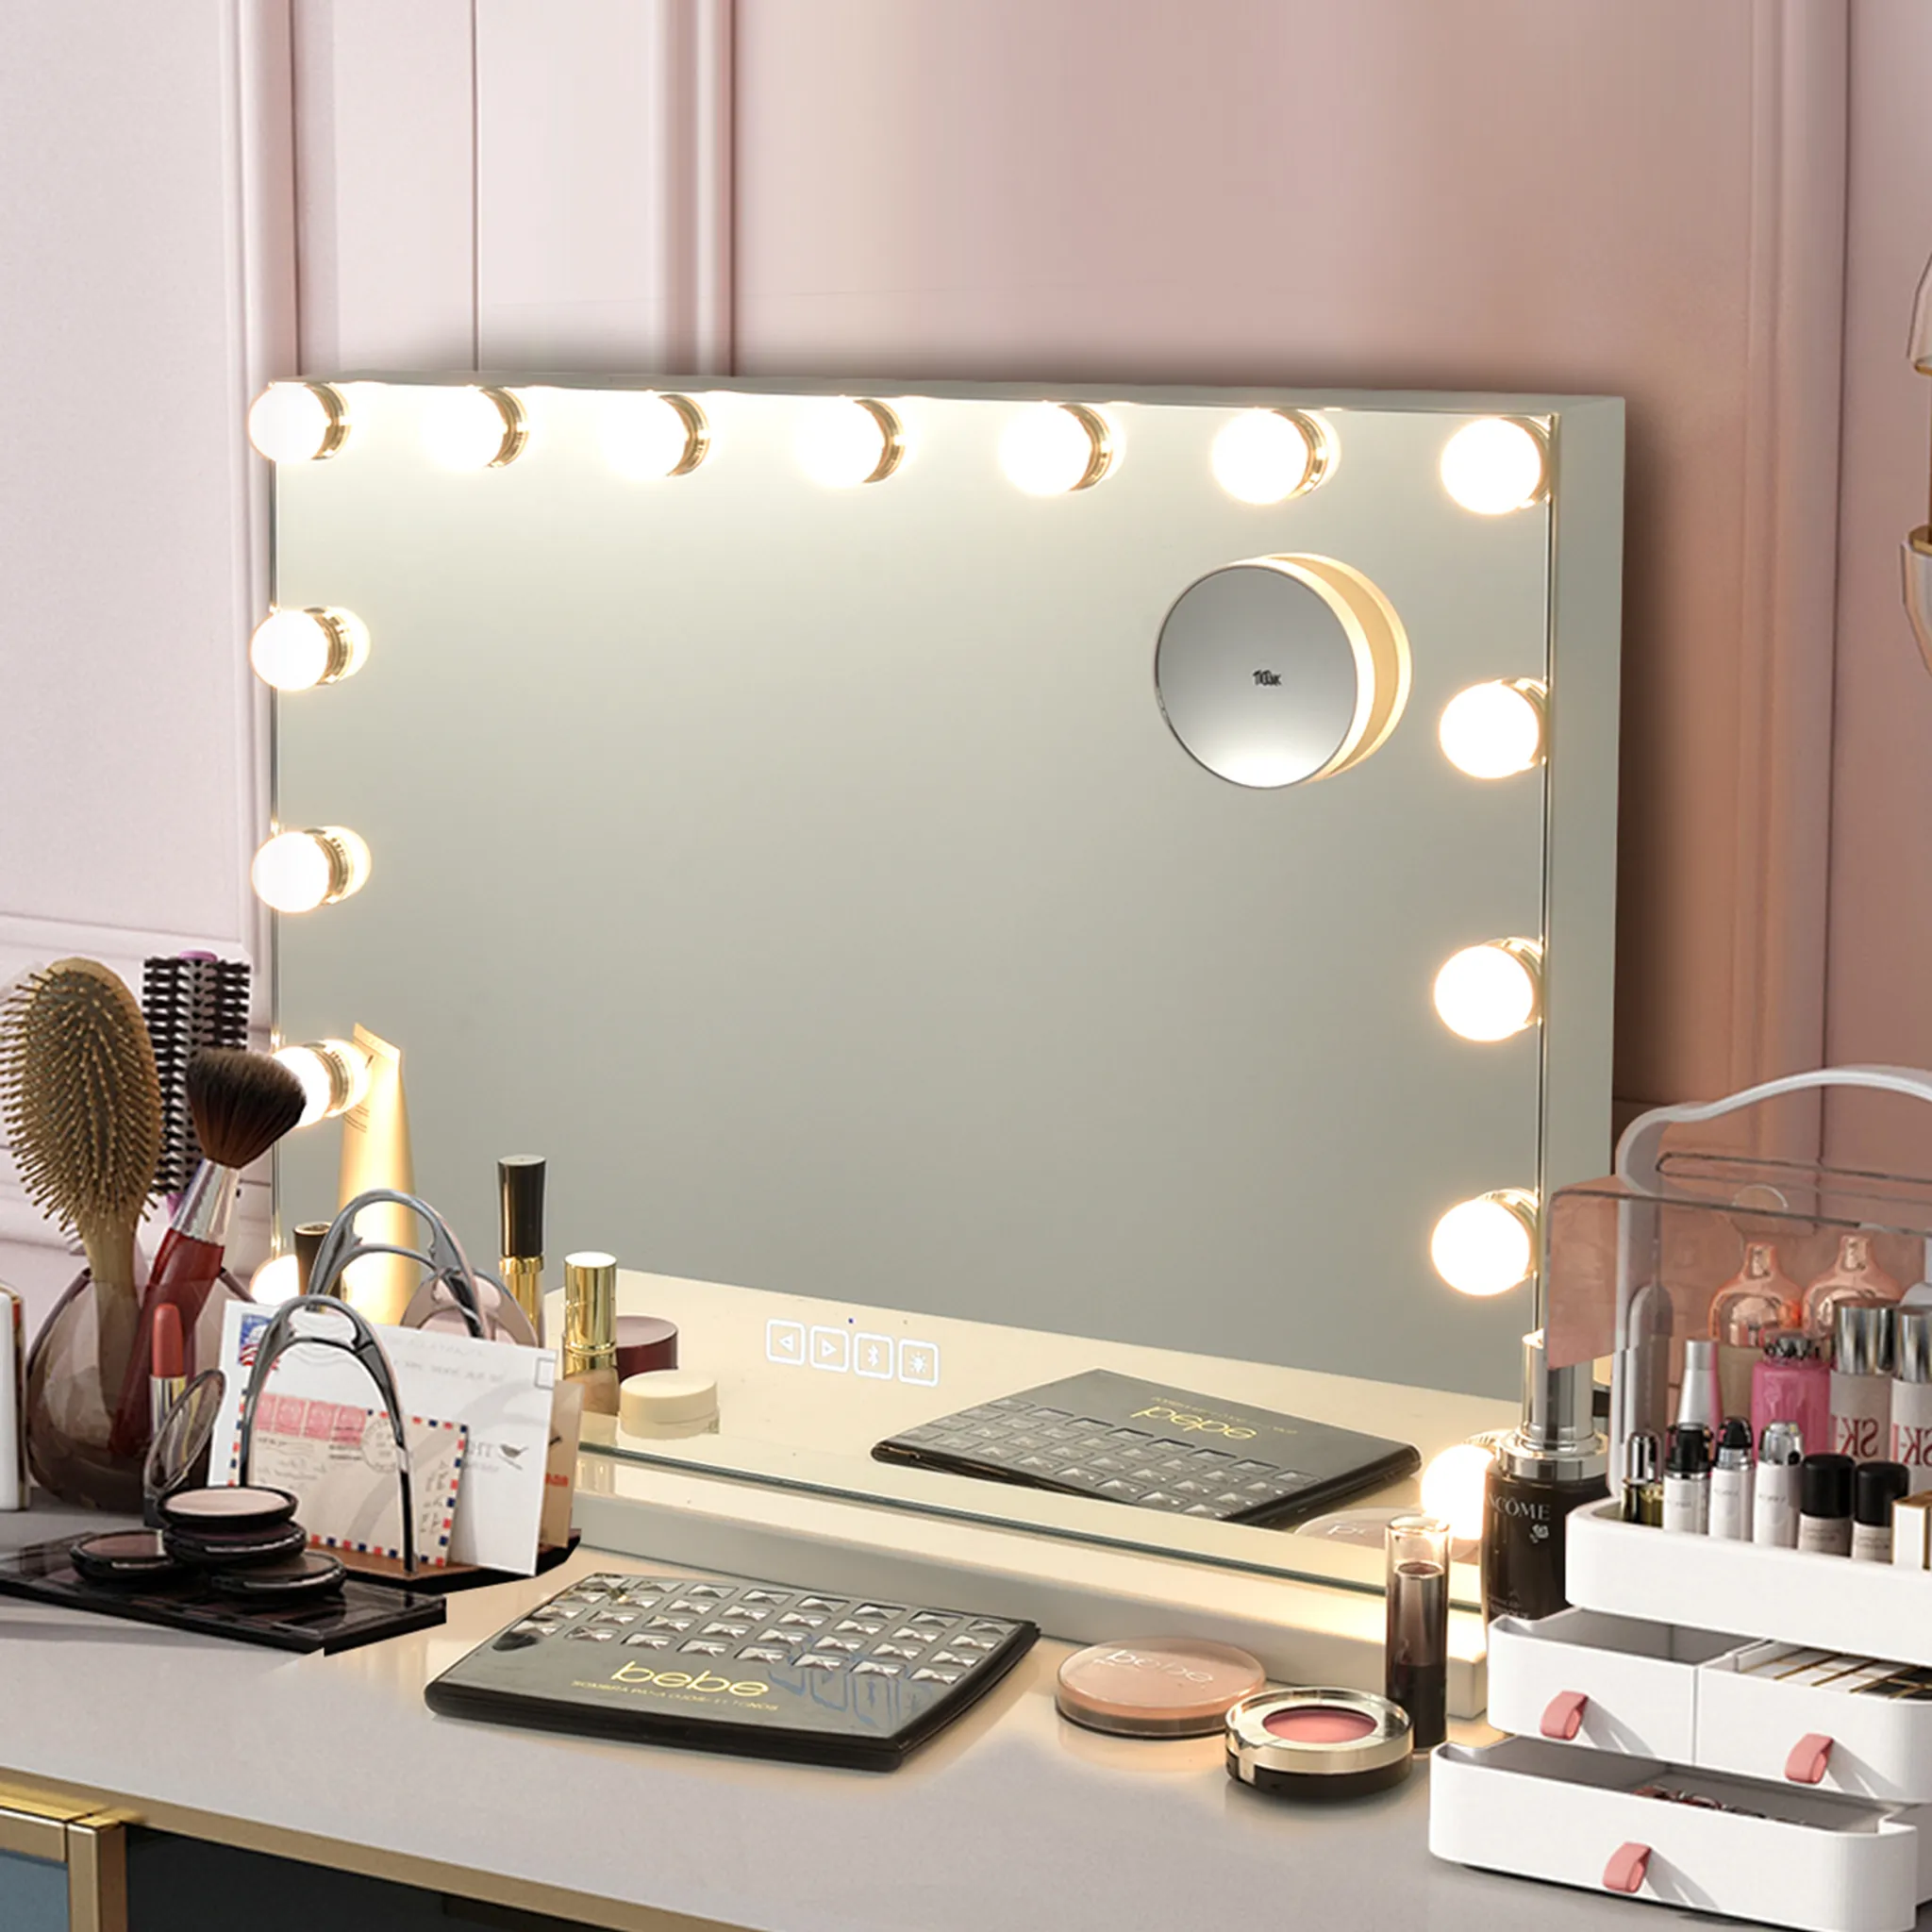 Puluomis Schminkspiegel Kosmetikspiegel Hollywood Spiegel Dimmbar mit 18  LED Beleuchtung 3 Lichtfarben, Touchscreen und 10X Vergrößerung